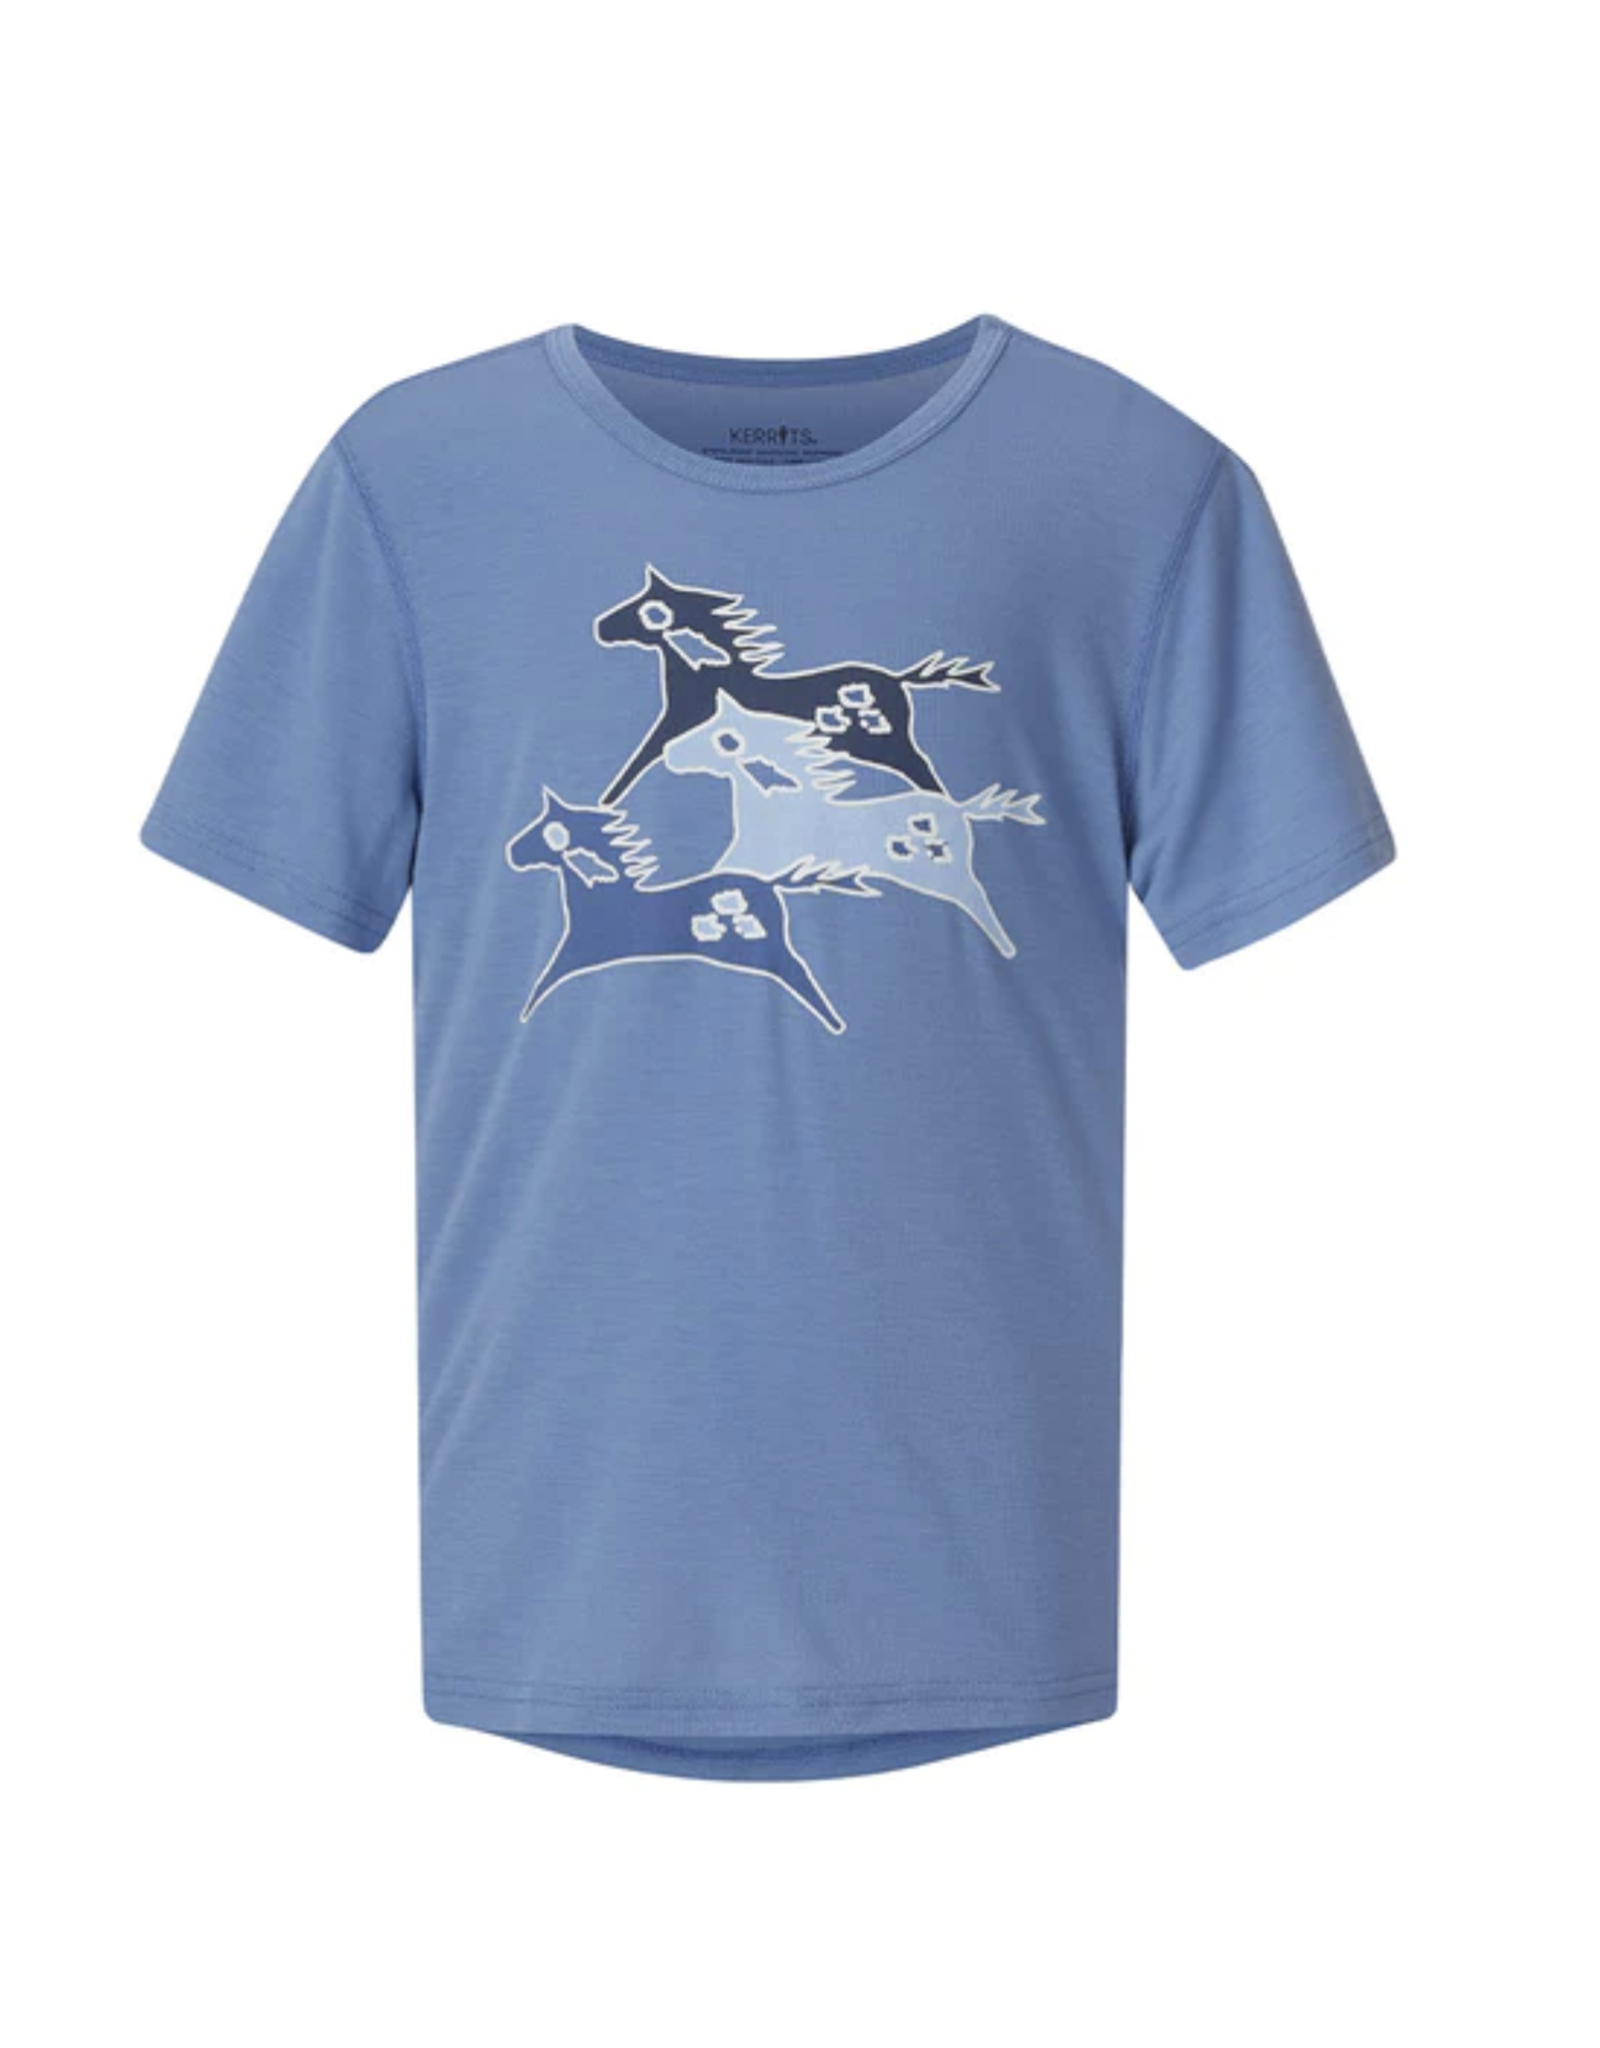 Kerrits Kids' Painted Horse Tee Shirt